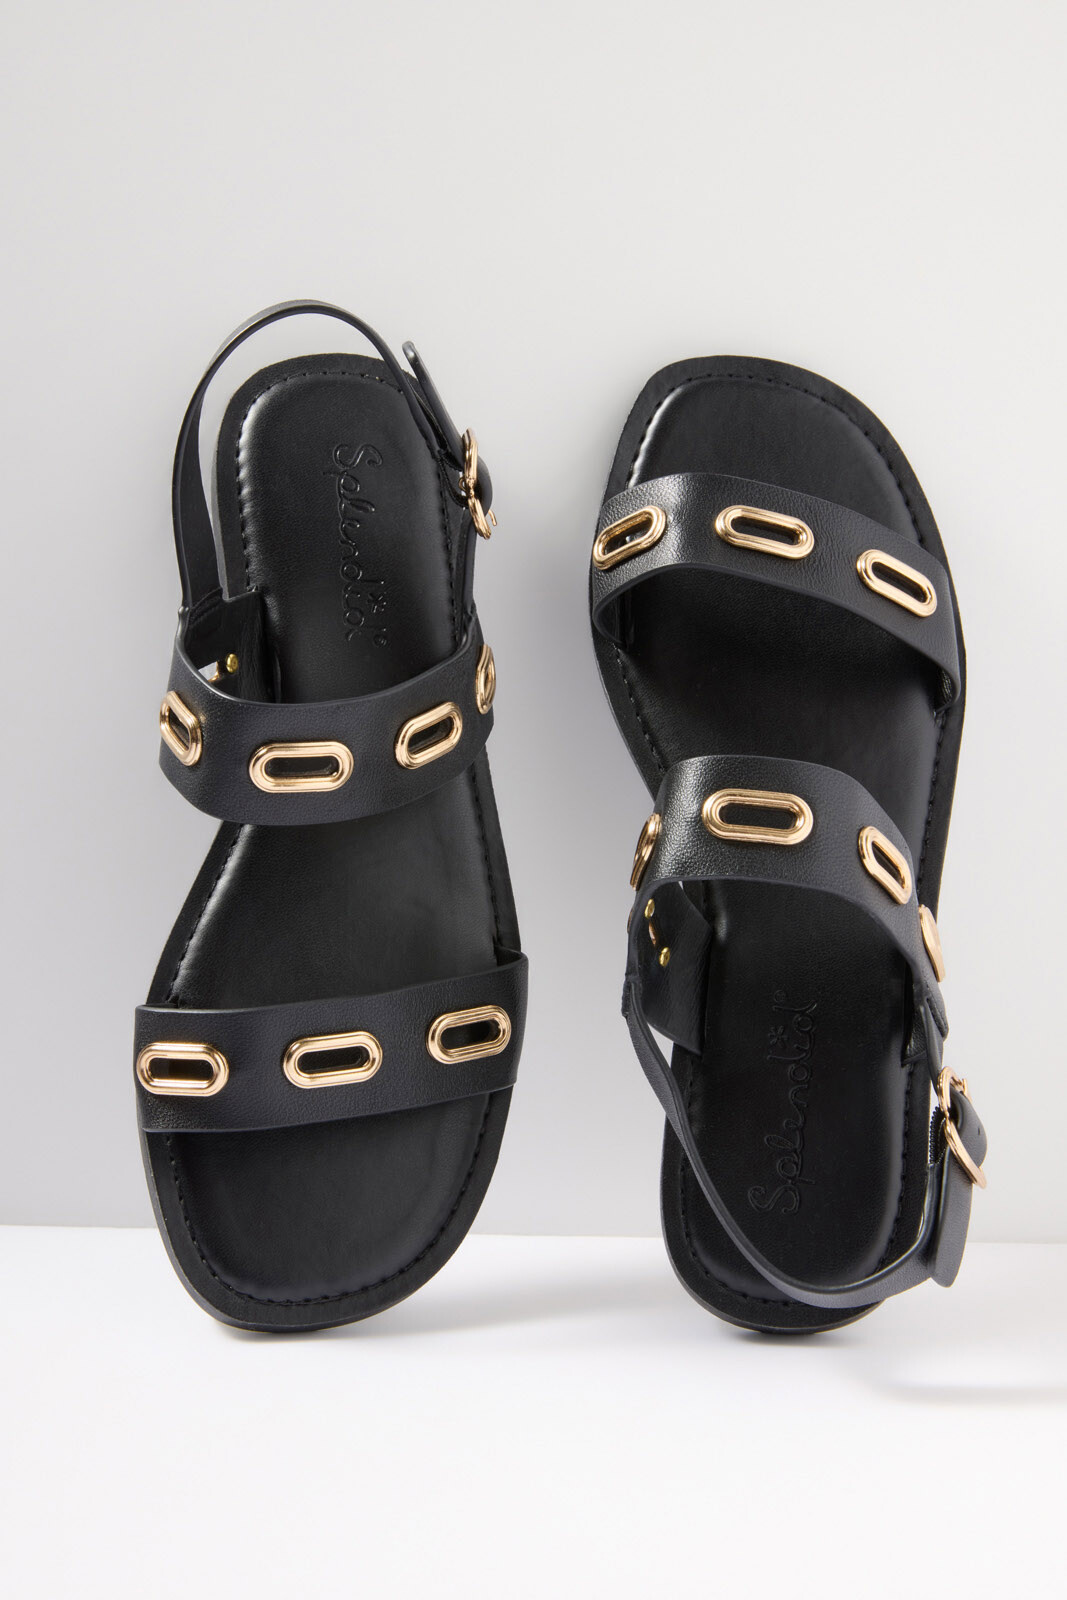 Travel Must Have - Black/Gold Grommet Sandal